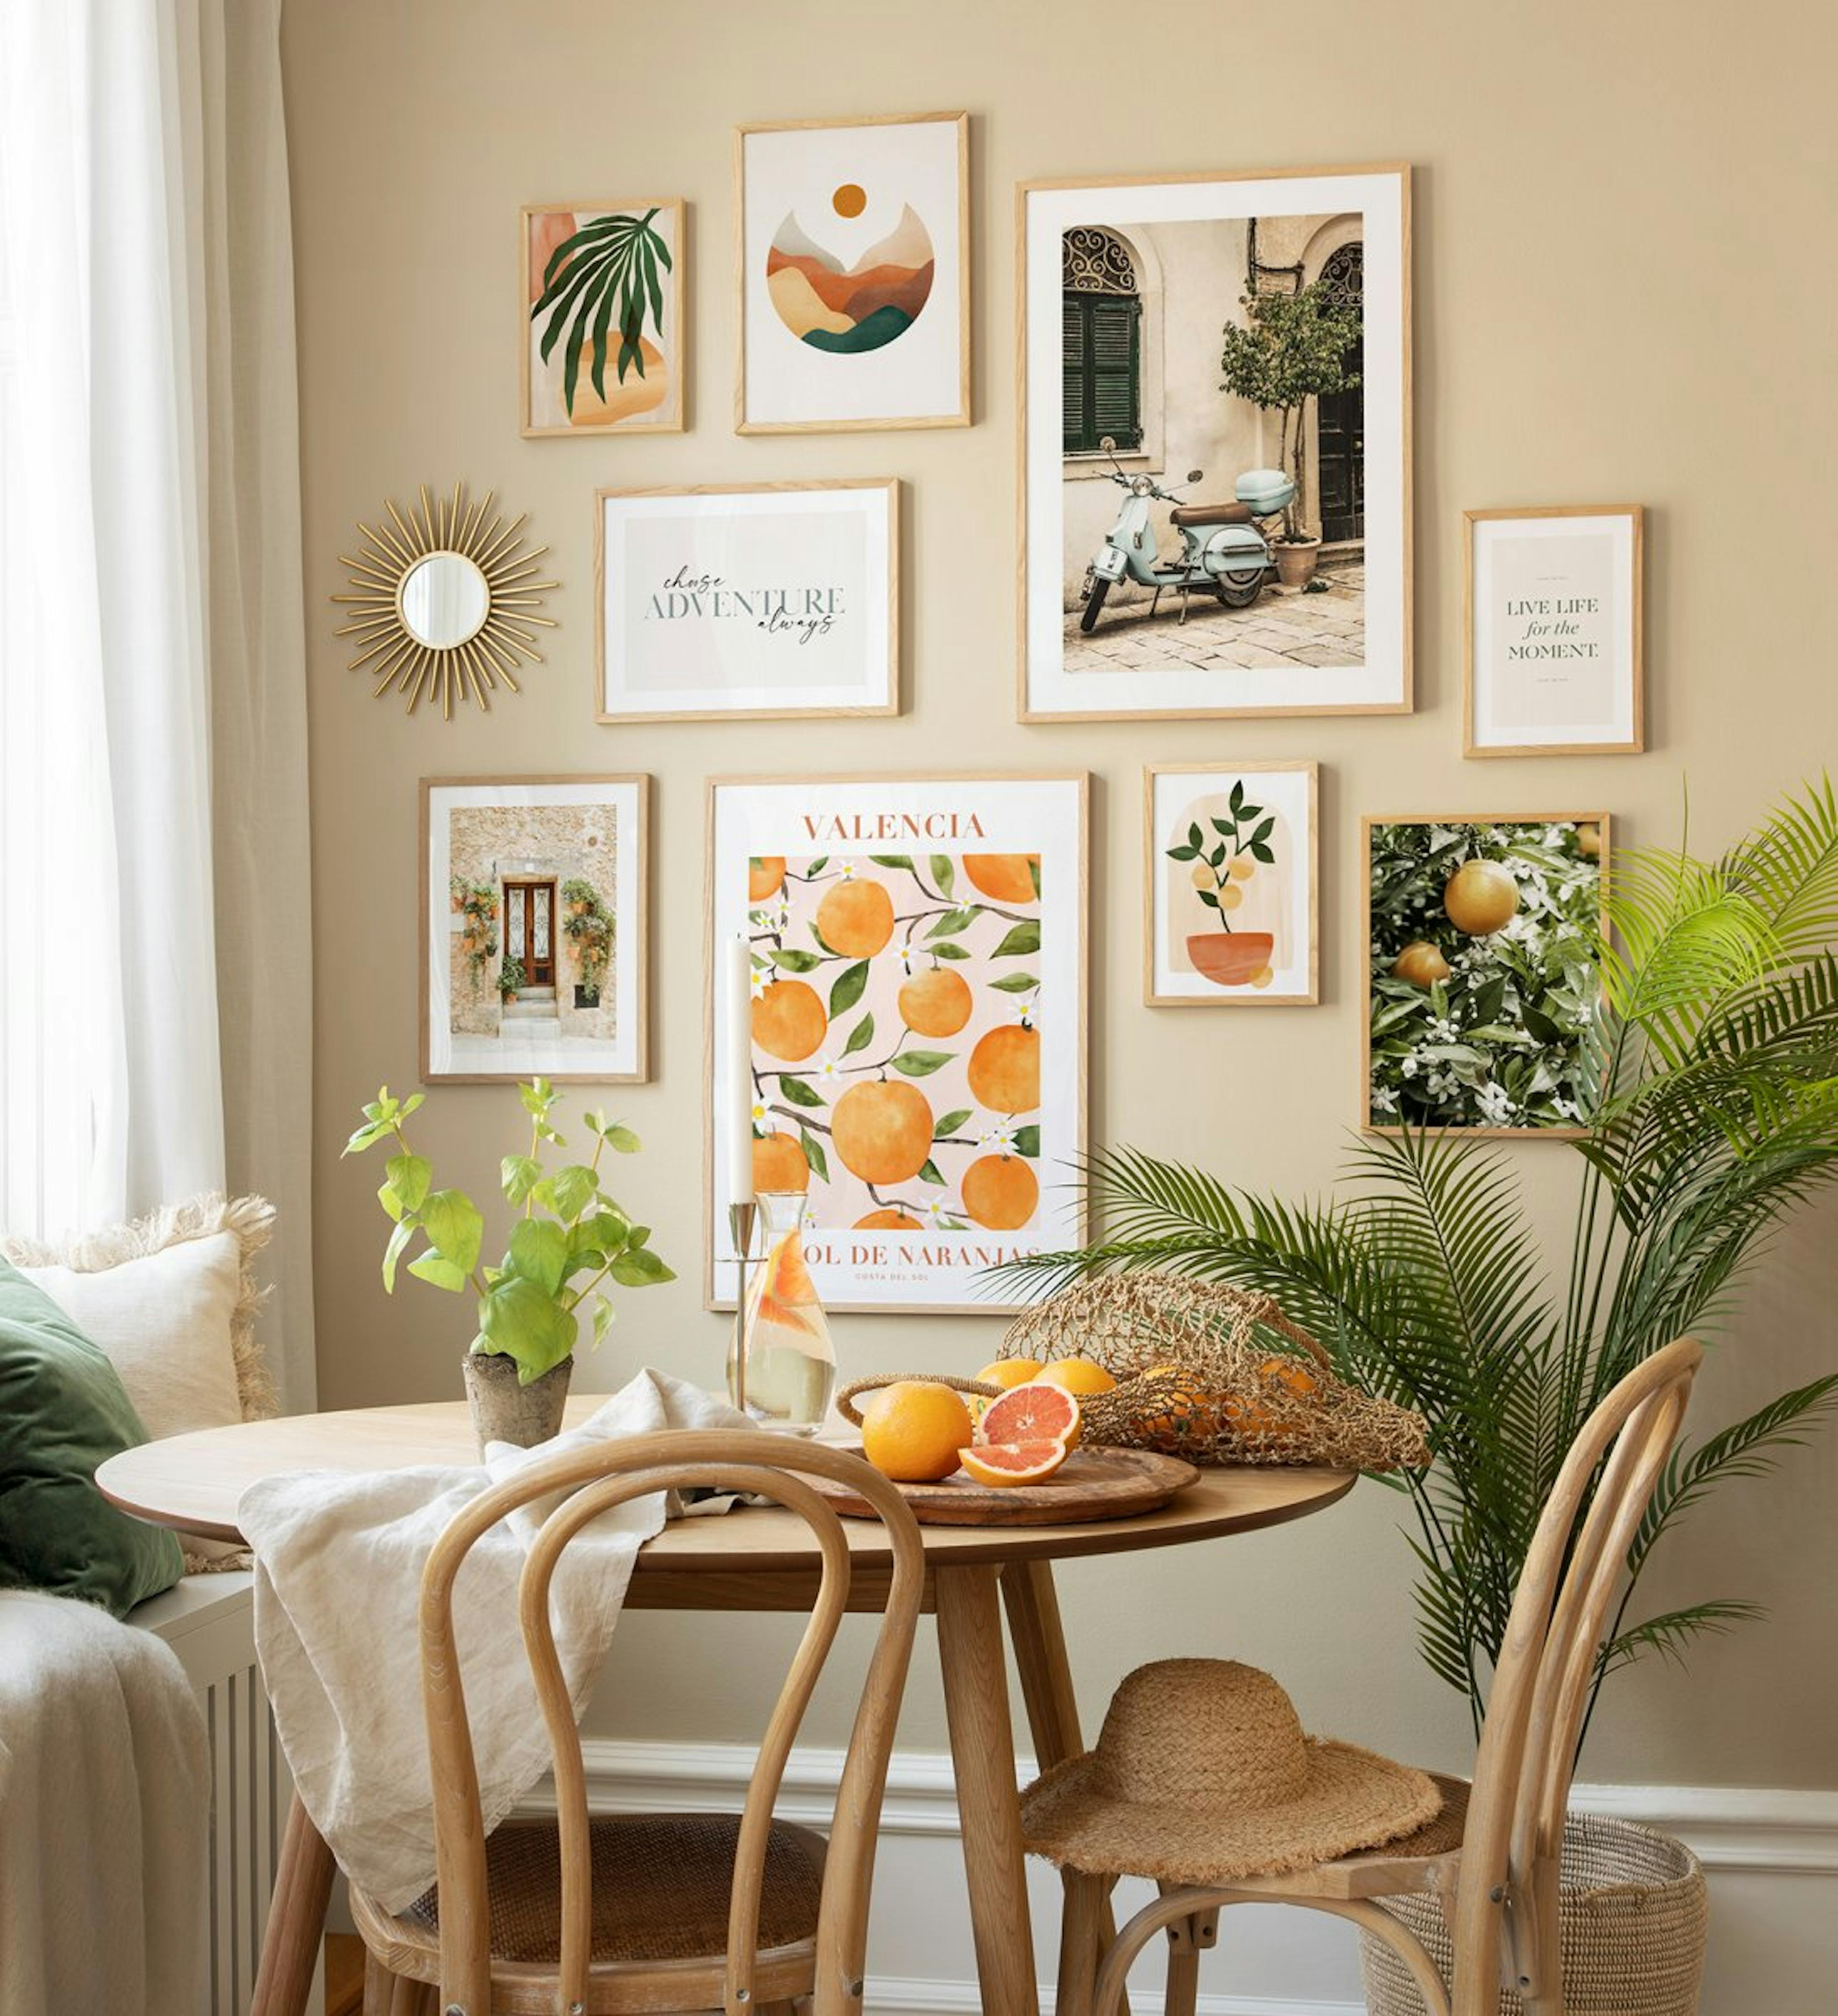 Décoration murale élégante pour votre cuisine. Laissez-vous inspirer par ces affiches branchées et ces cadres en chêne et rénove